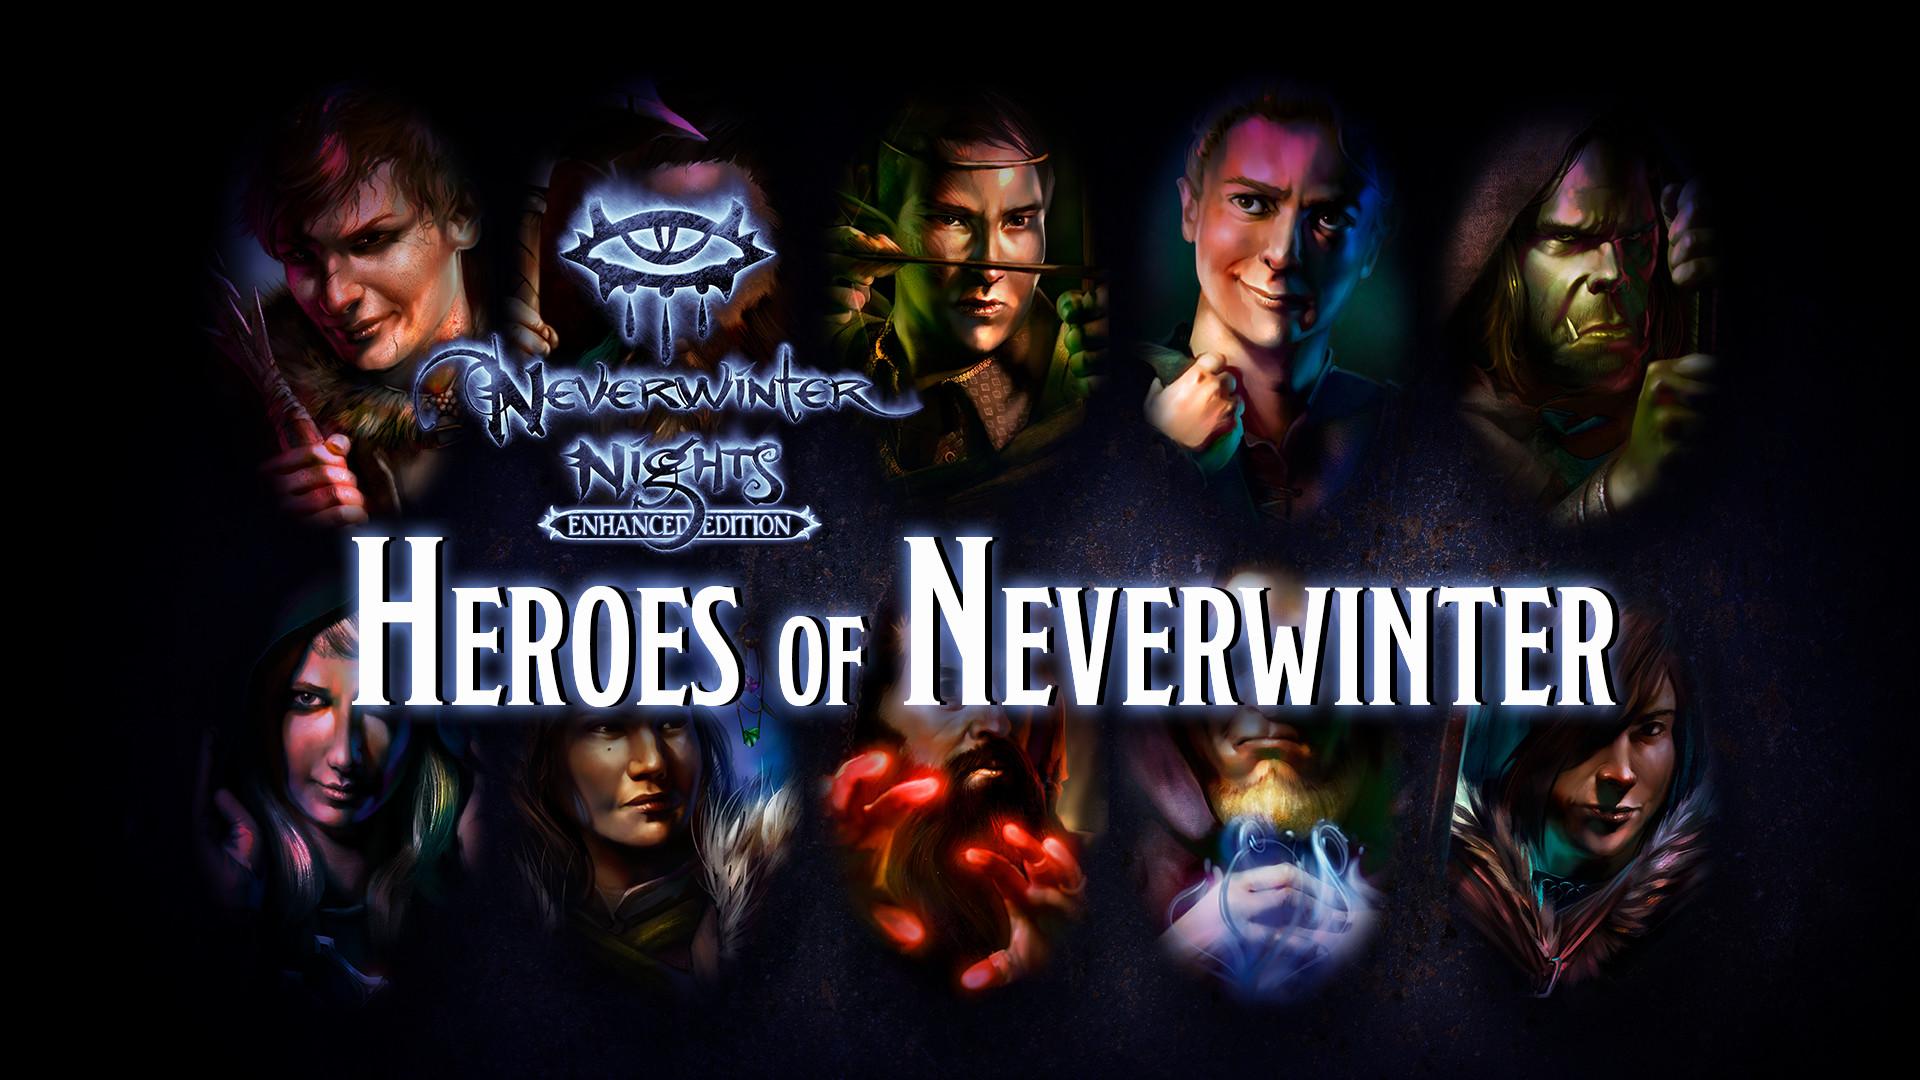 Neverwinter Nights: Enhanced Edition of Neverwinter